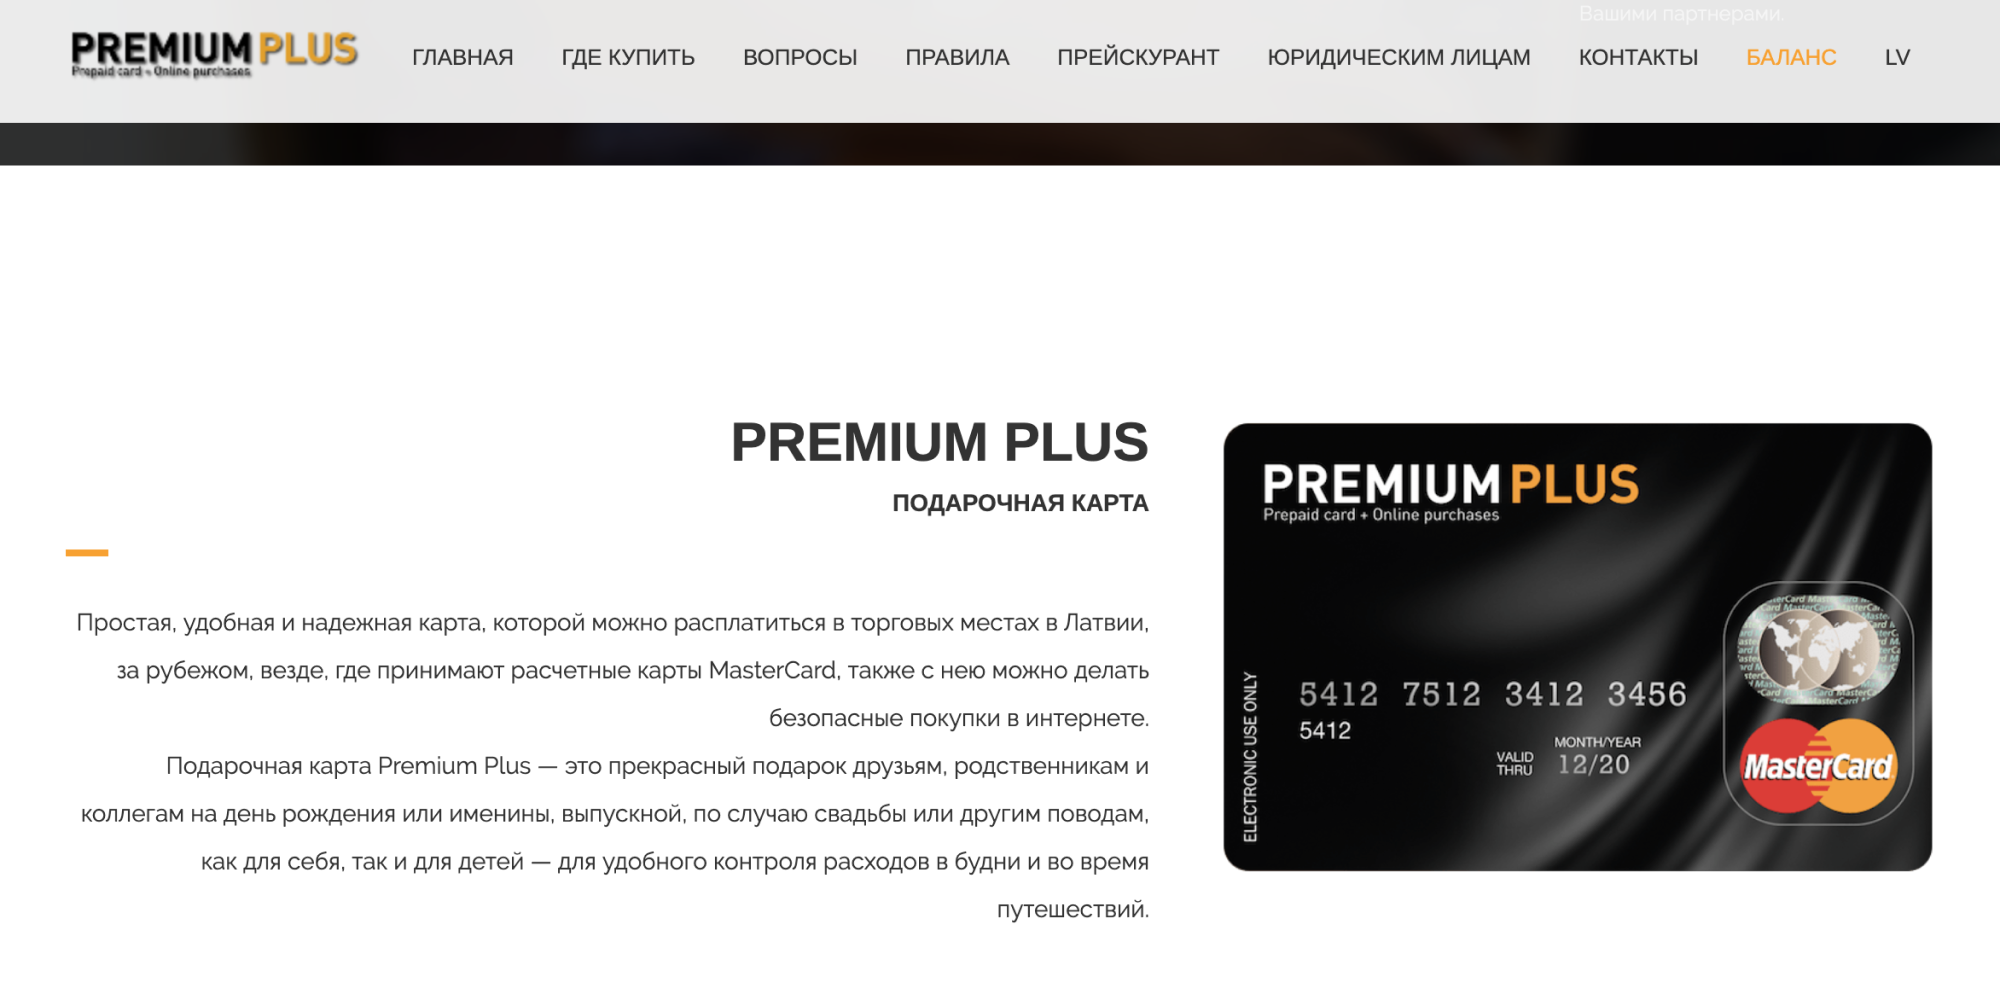 Так выглядит предоплаченная подарочная карта Premium Plus